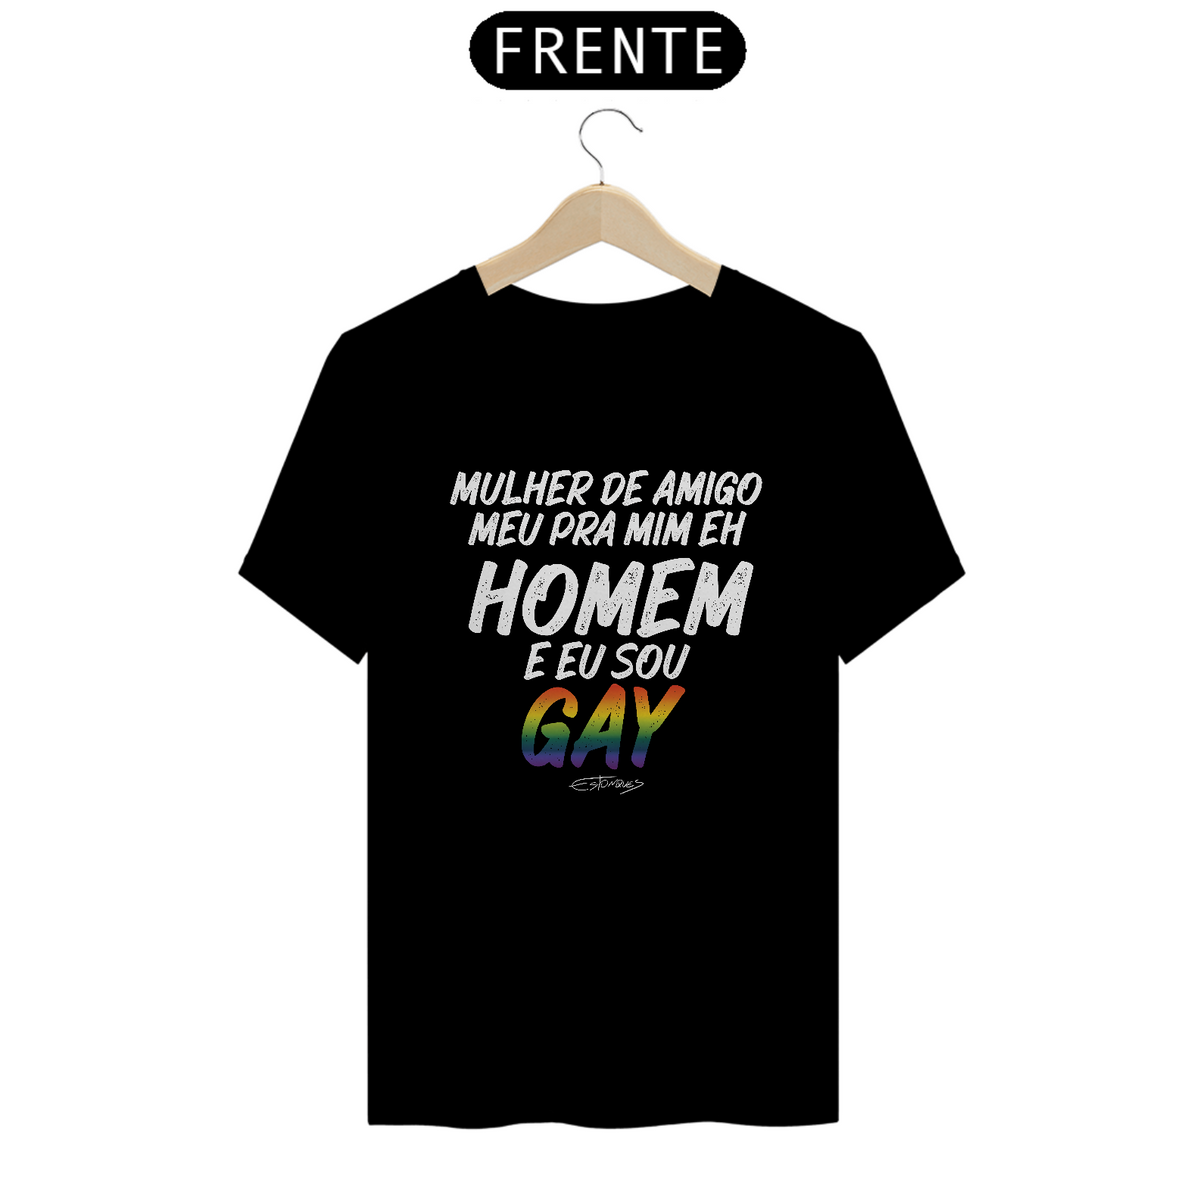 Nome do produto: Camiseta Mulher de Amigo meu pra mim eh homem e eu sou gay